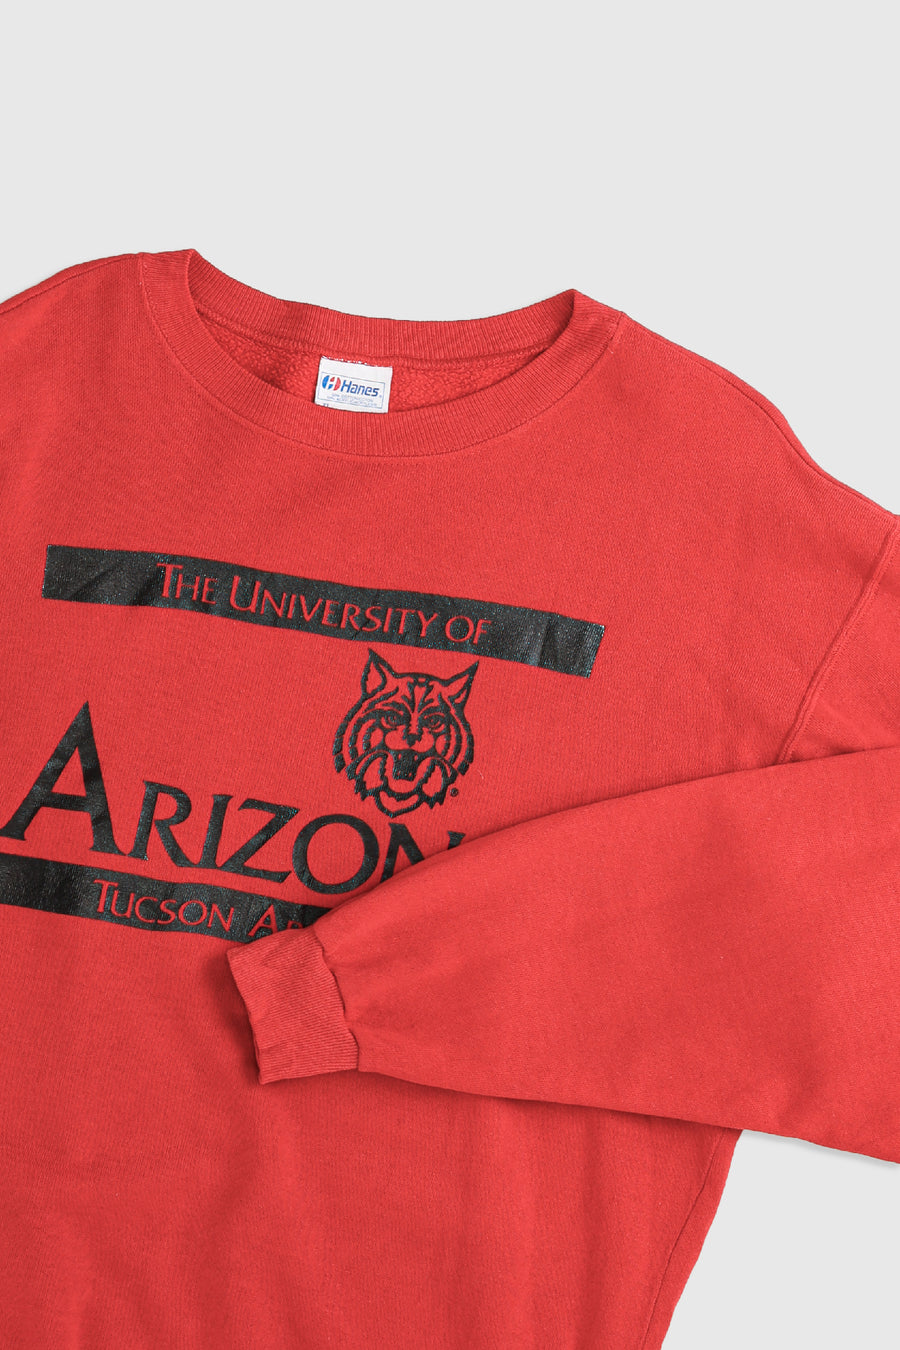 Vintage University of Arizona Sweatshirt